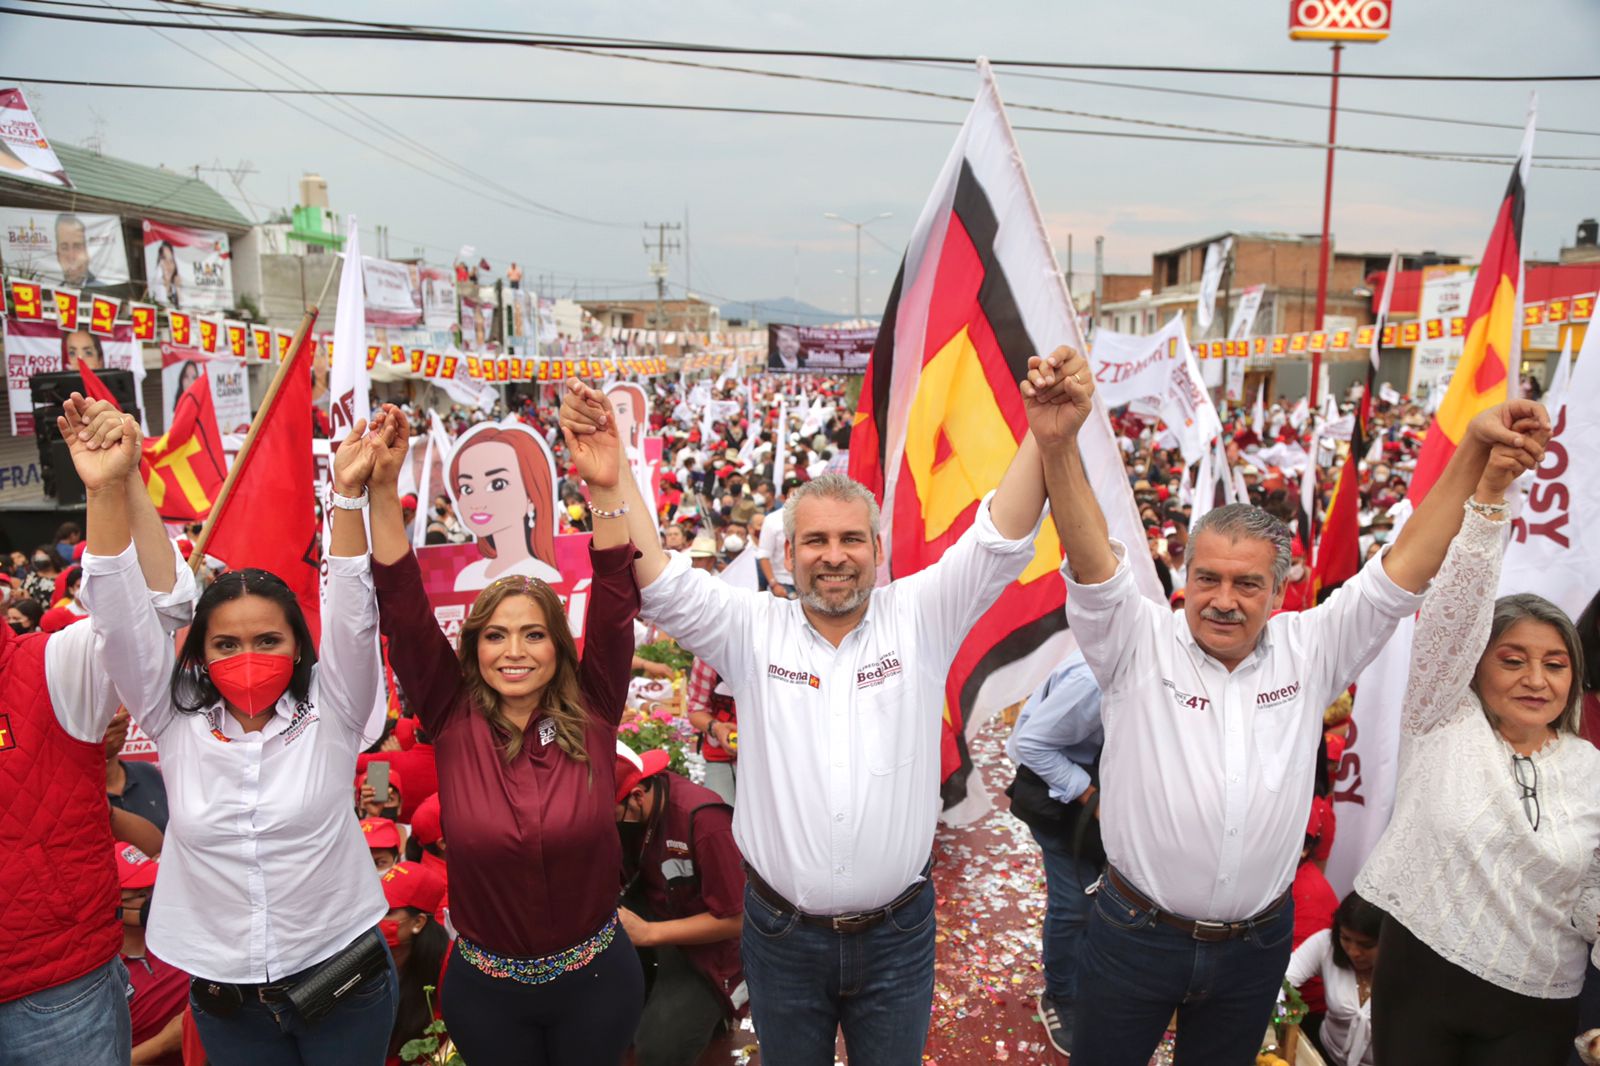 Zitácuaro quiere un gobernador para todas y todos, no un gerente de negocios Bedolla